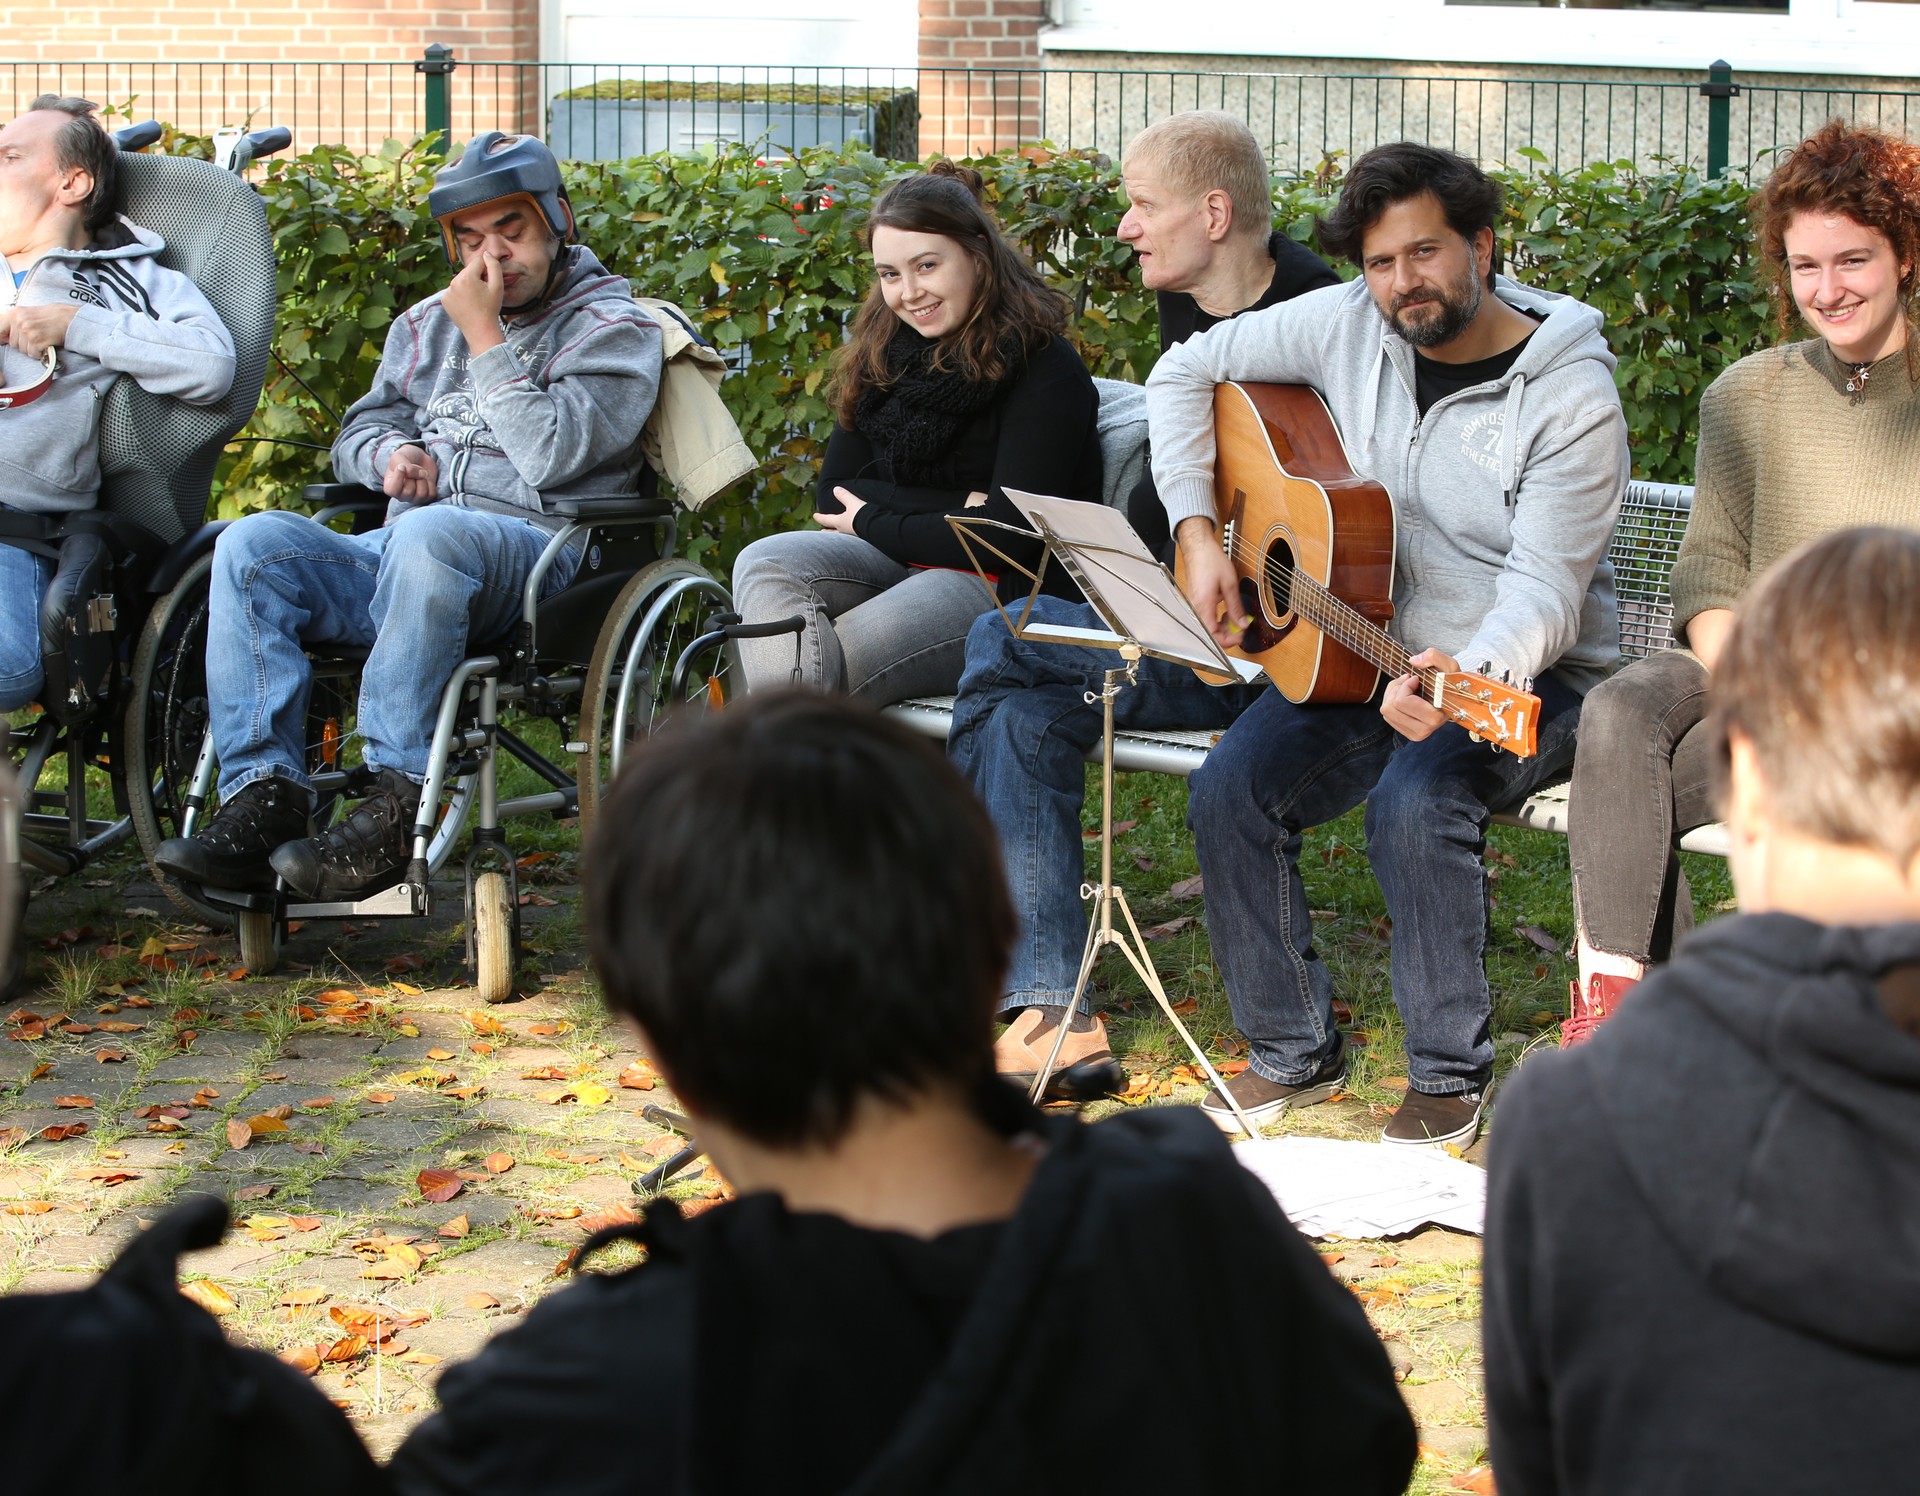 Viele Menschen sitzen zusammen in einem Kreis und musizieren, ein Mann spielt auf einer Gitarre